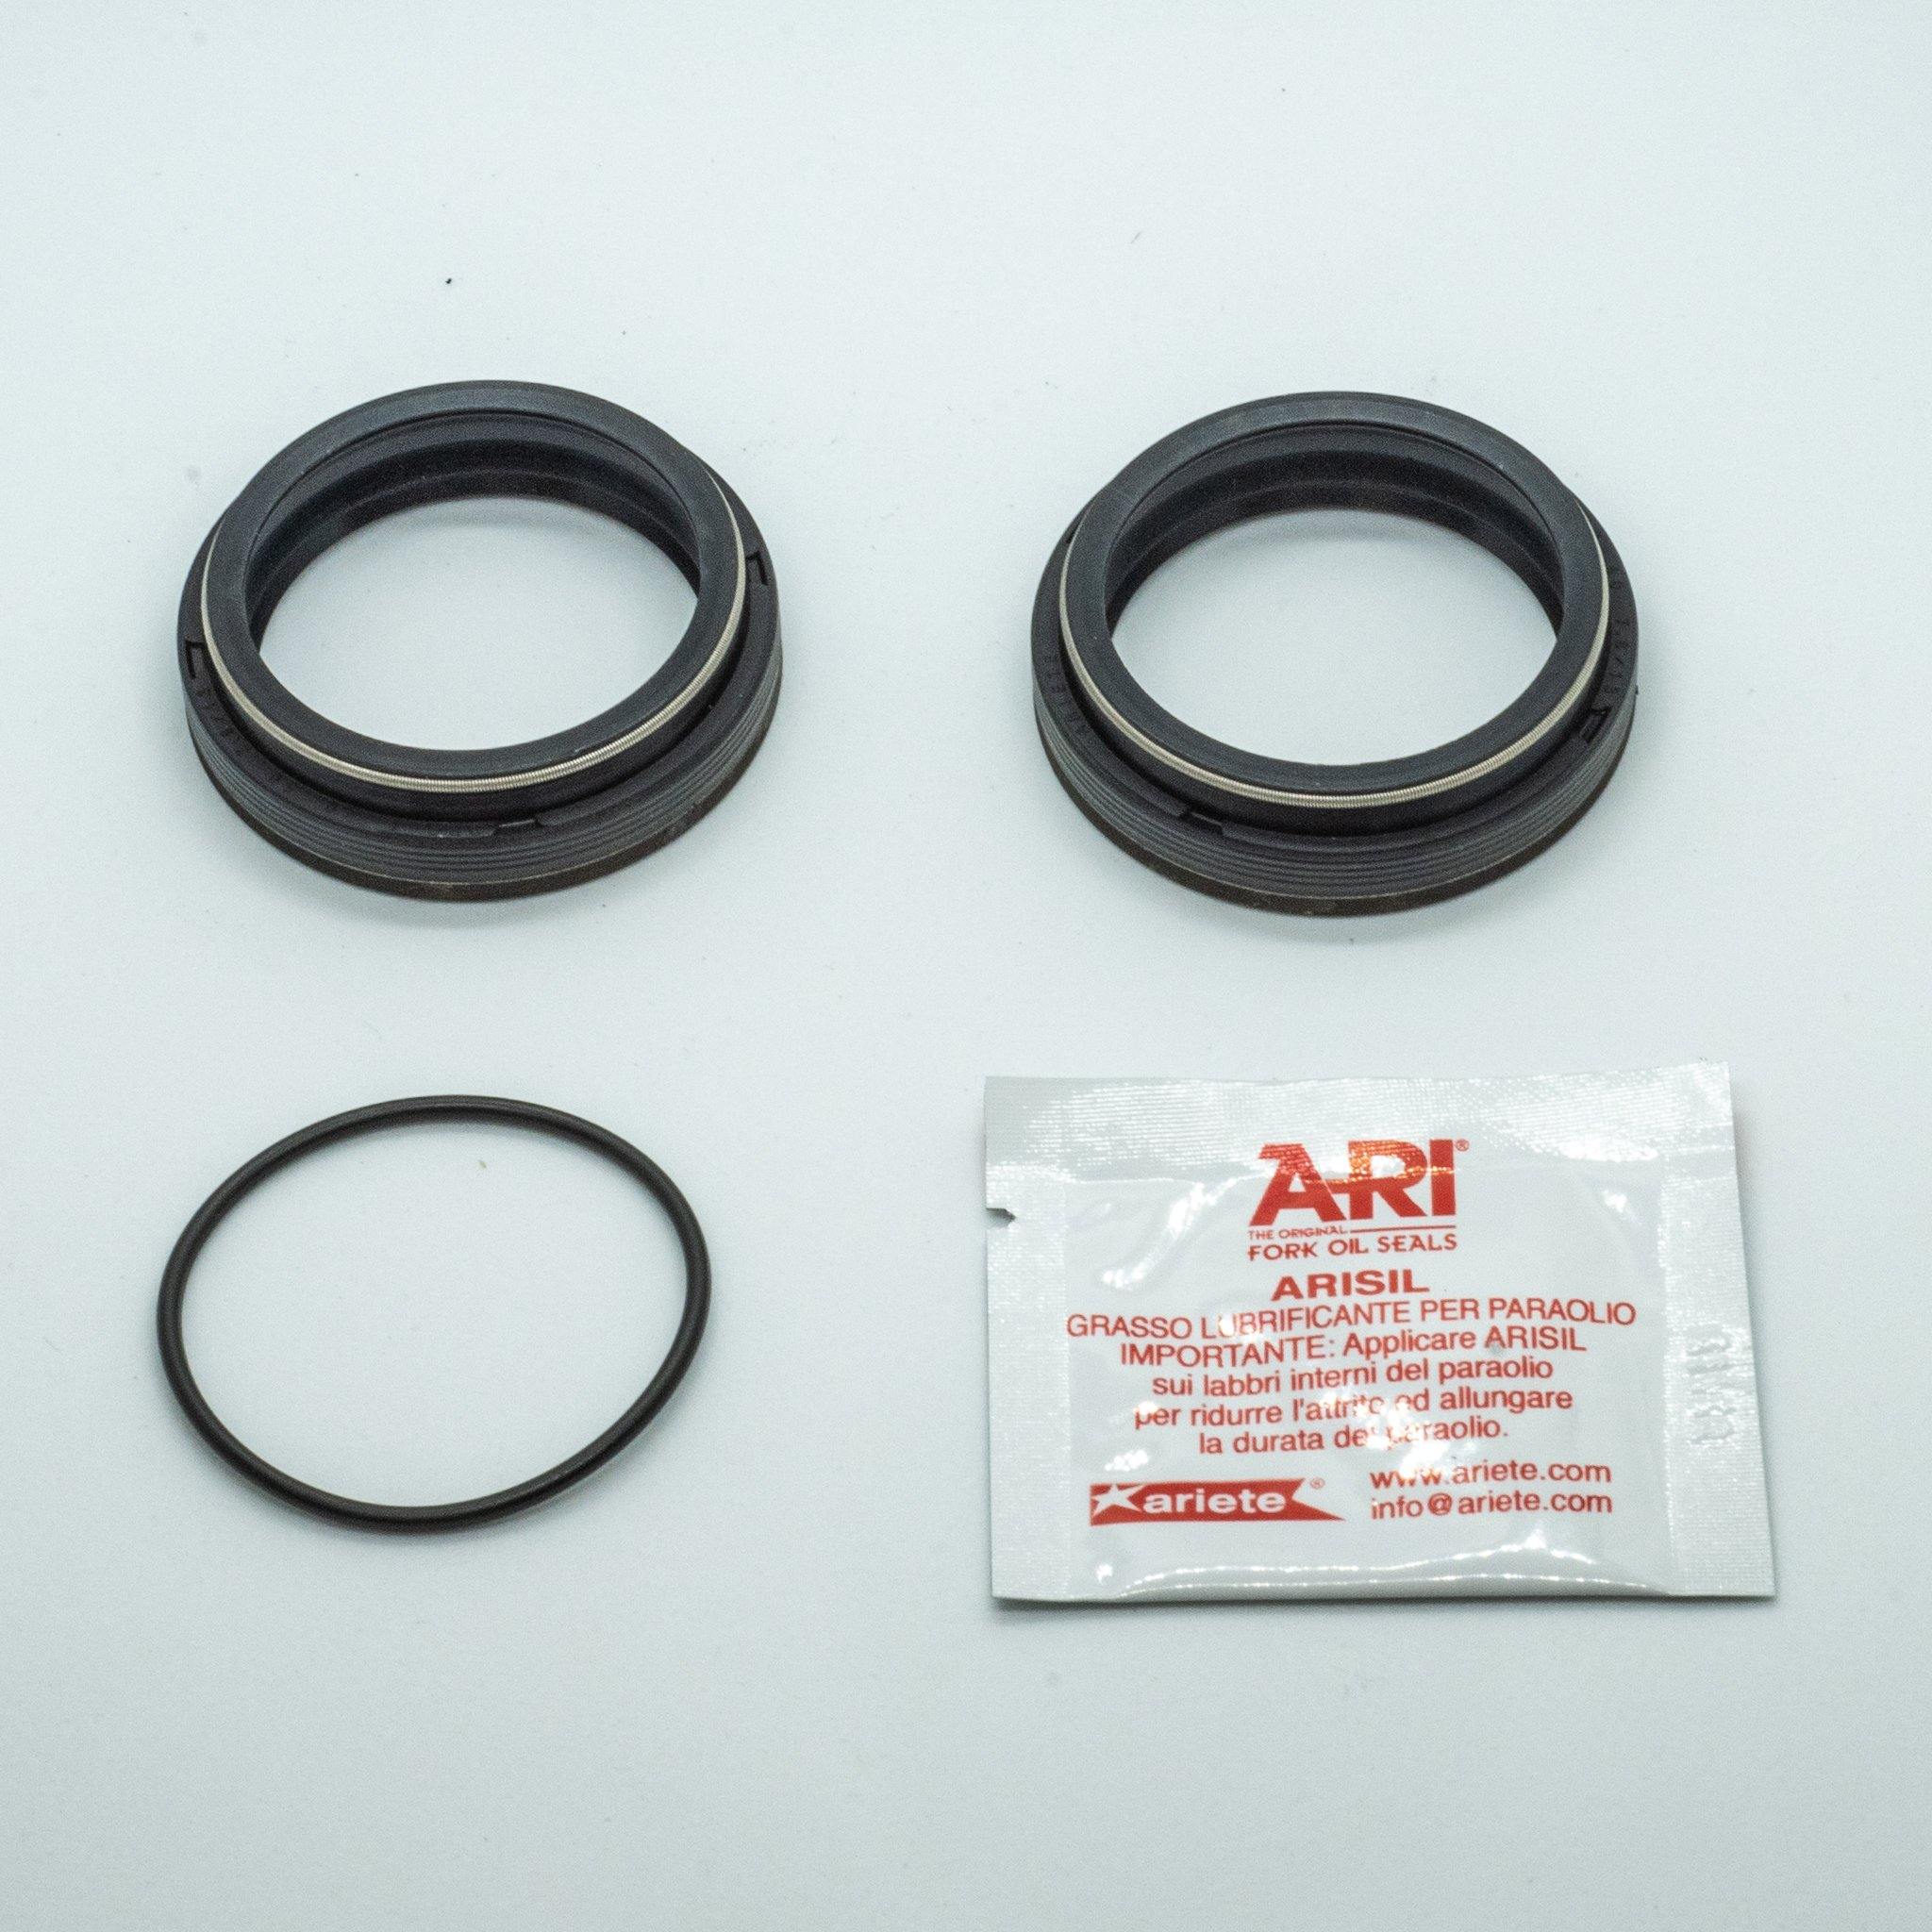 ARI Fork Oil Seals - 38 Diameter - GAMUX